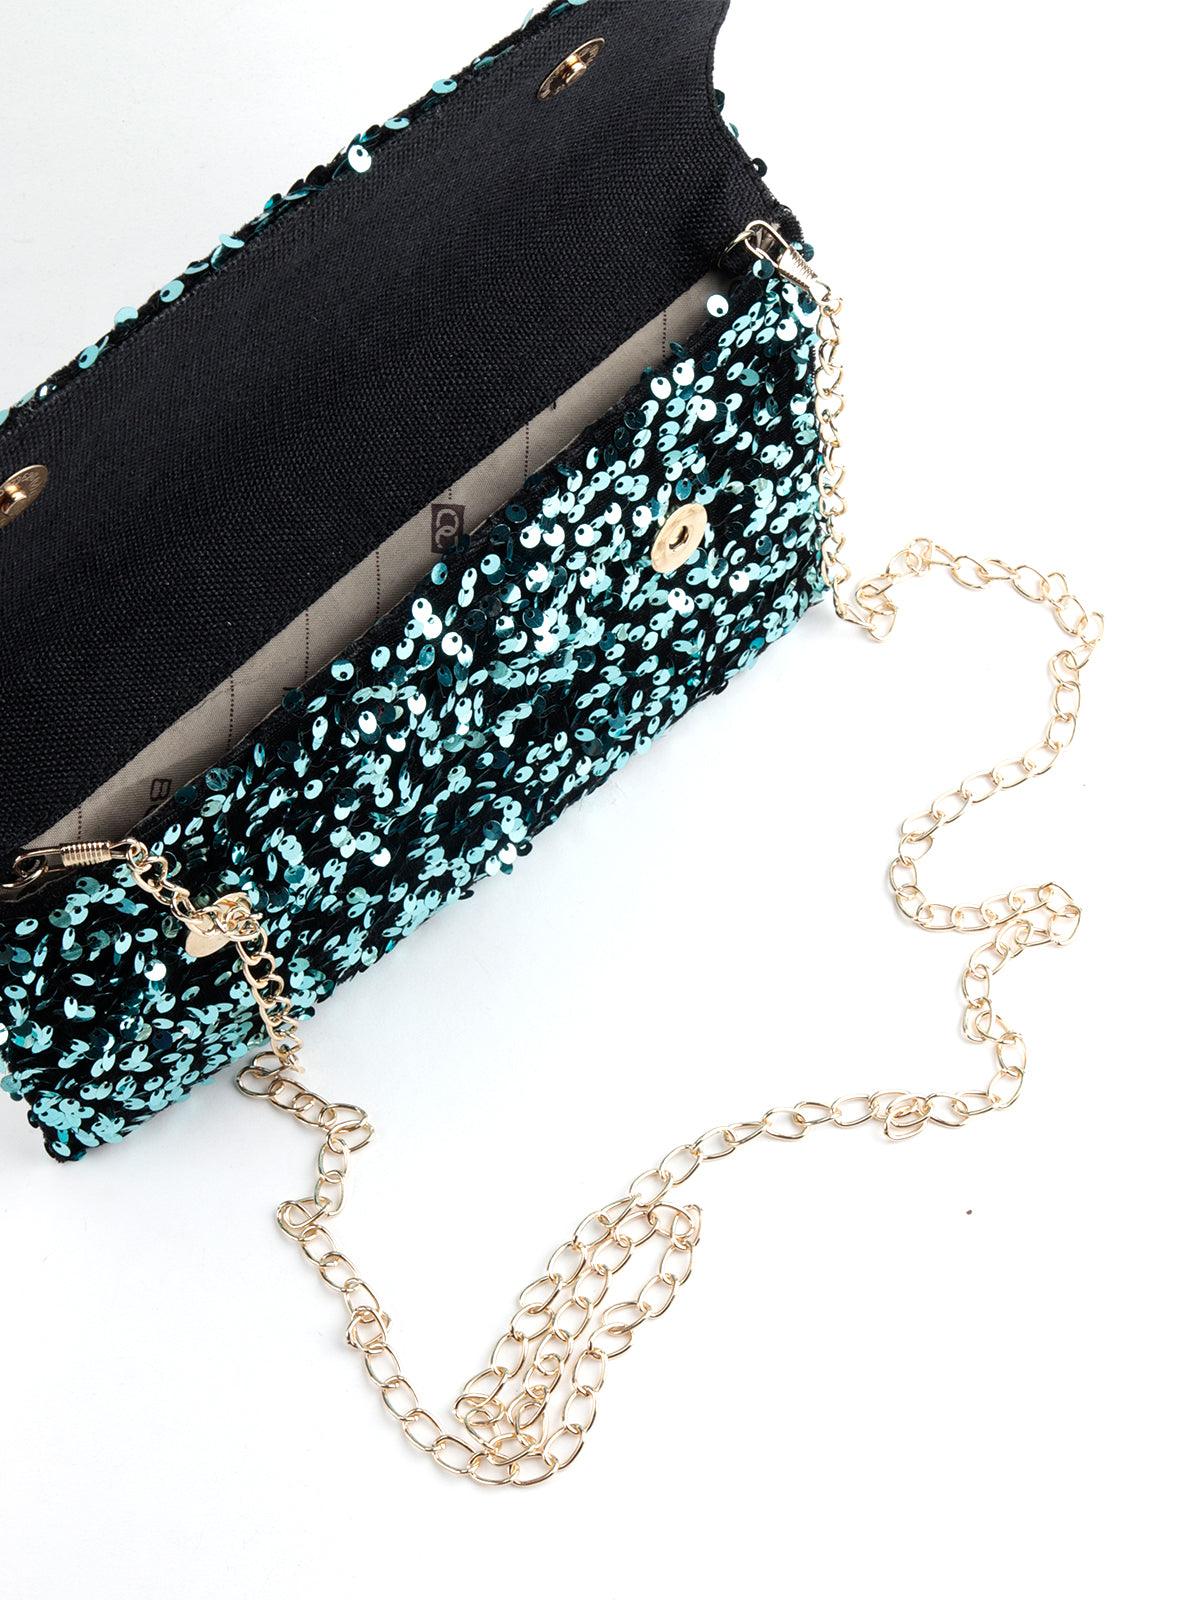 Black shimmery handbag - Odette